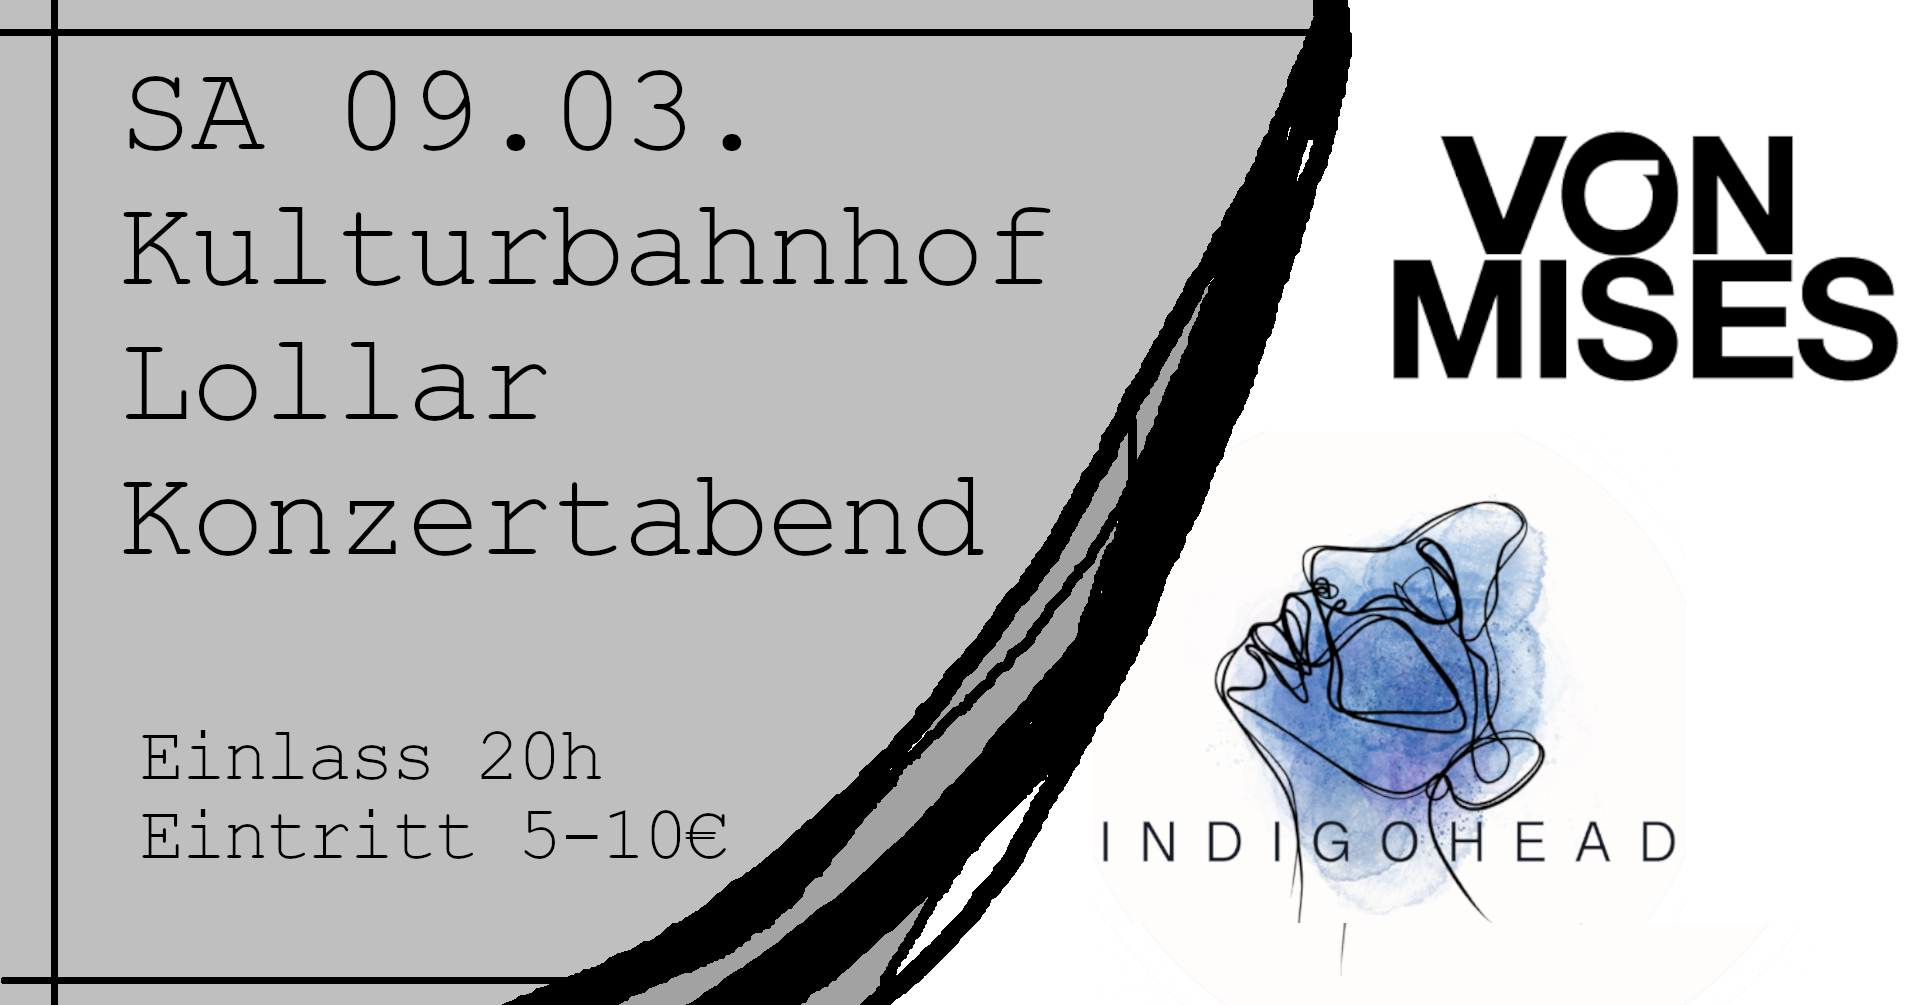 SA 09.03.24 – VON MISES (Köln) // INDIGOHEAD